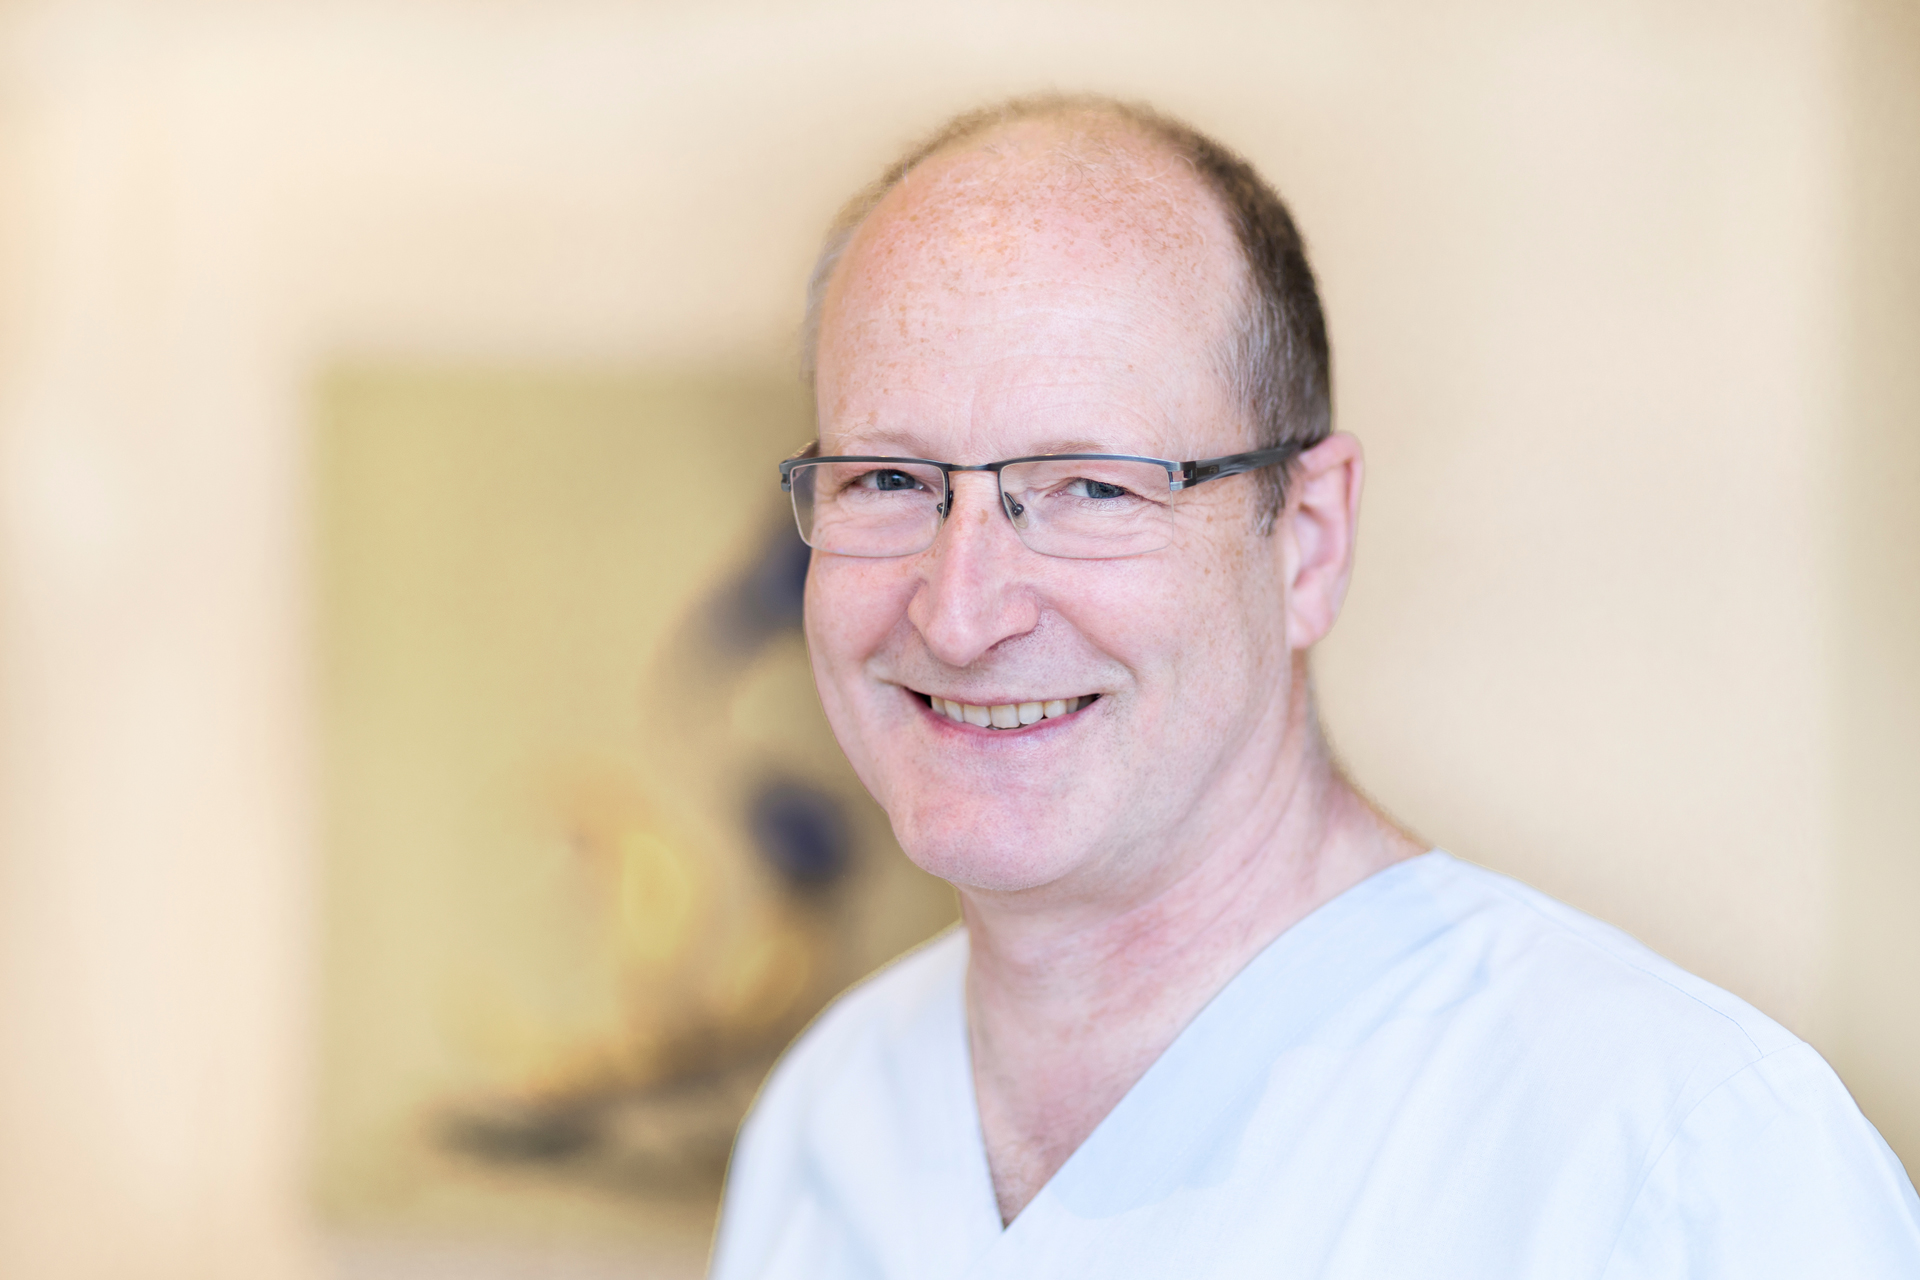 Zahnarzt Dr. Quantius – Spezialist für Implantate und Experte für die All-on-4-Methode